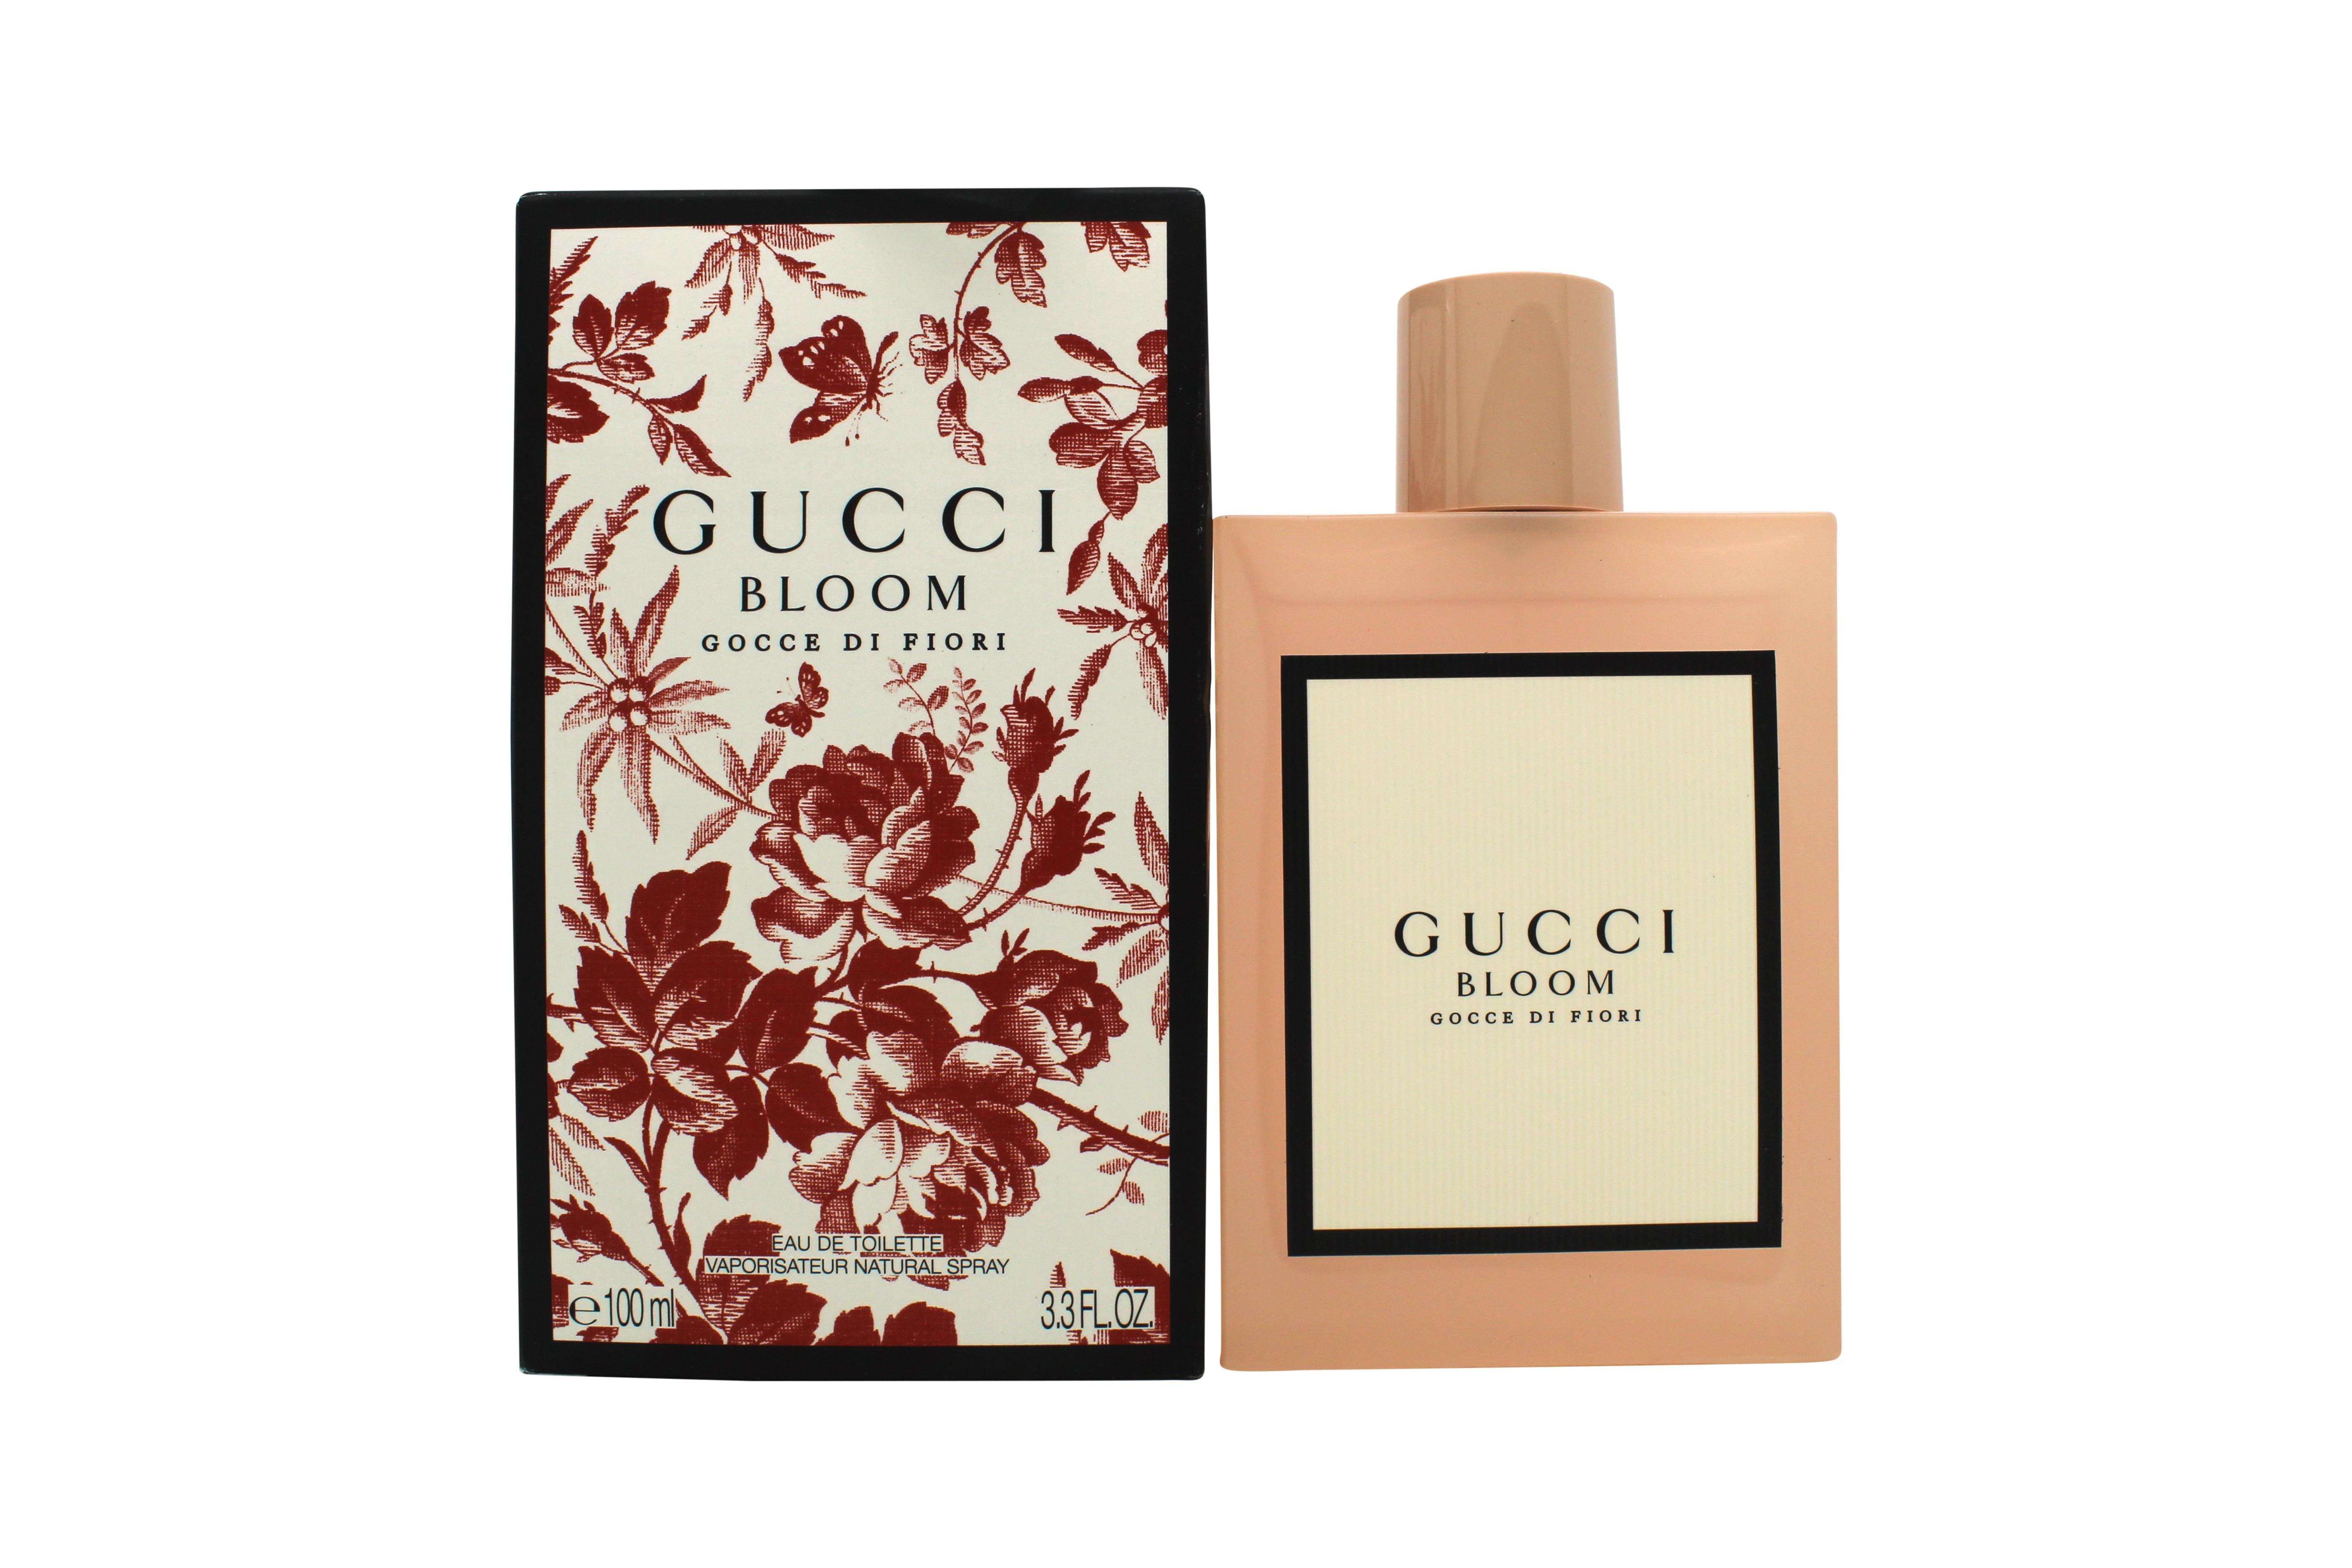 Gucci Bloom Gocce di Fiori Eau de Toilette 100ml Spray